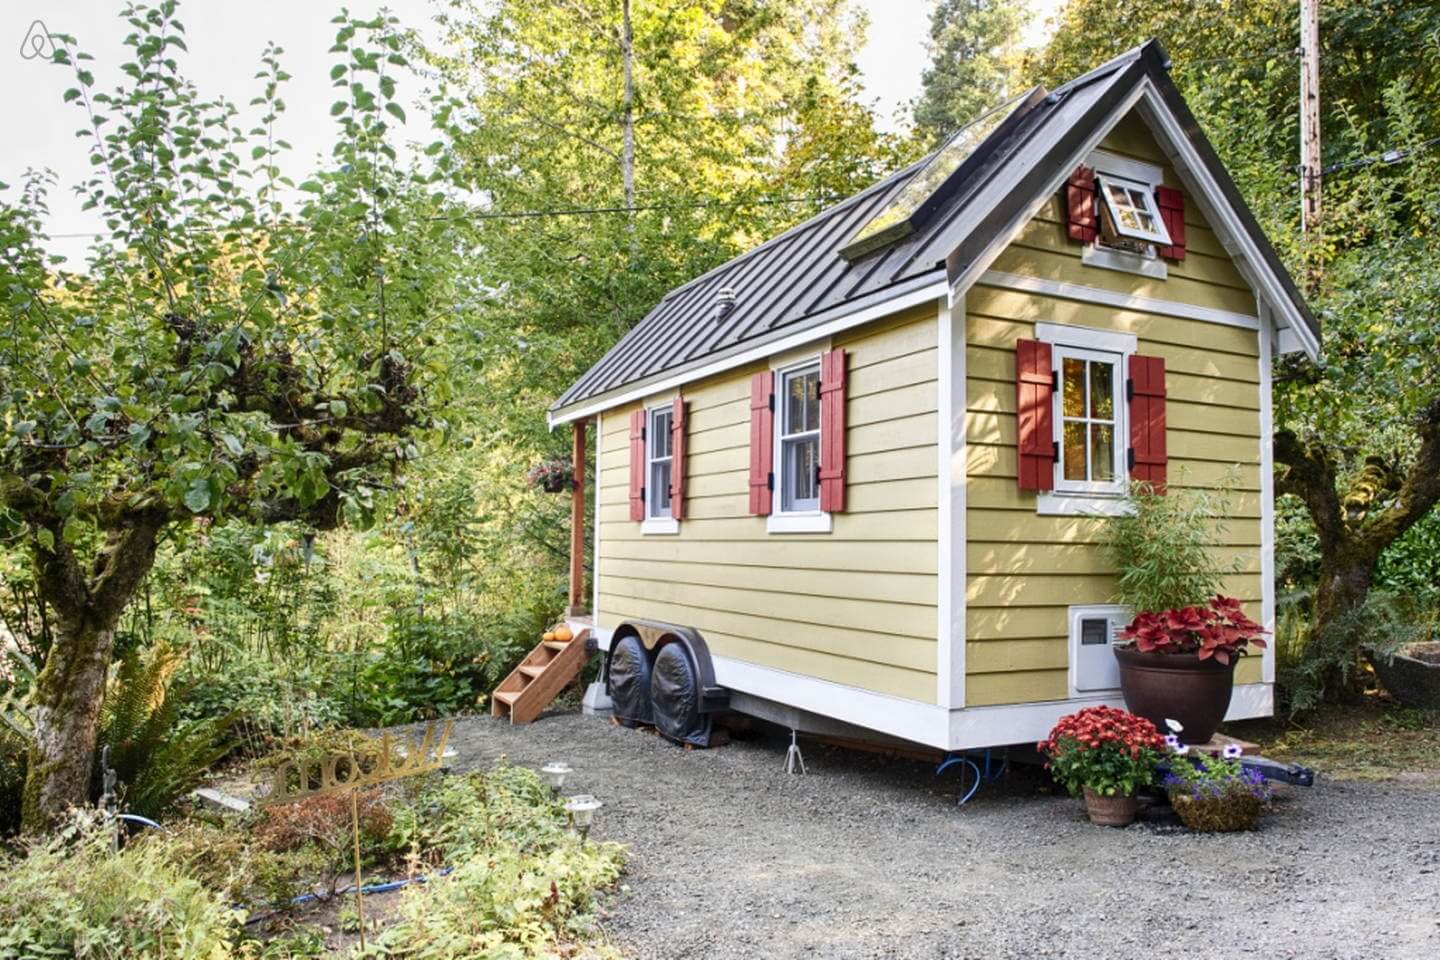 Movimiento “Tiny House”: ¿es más sustentable vivir a pequeña escala?